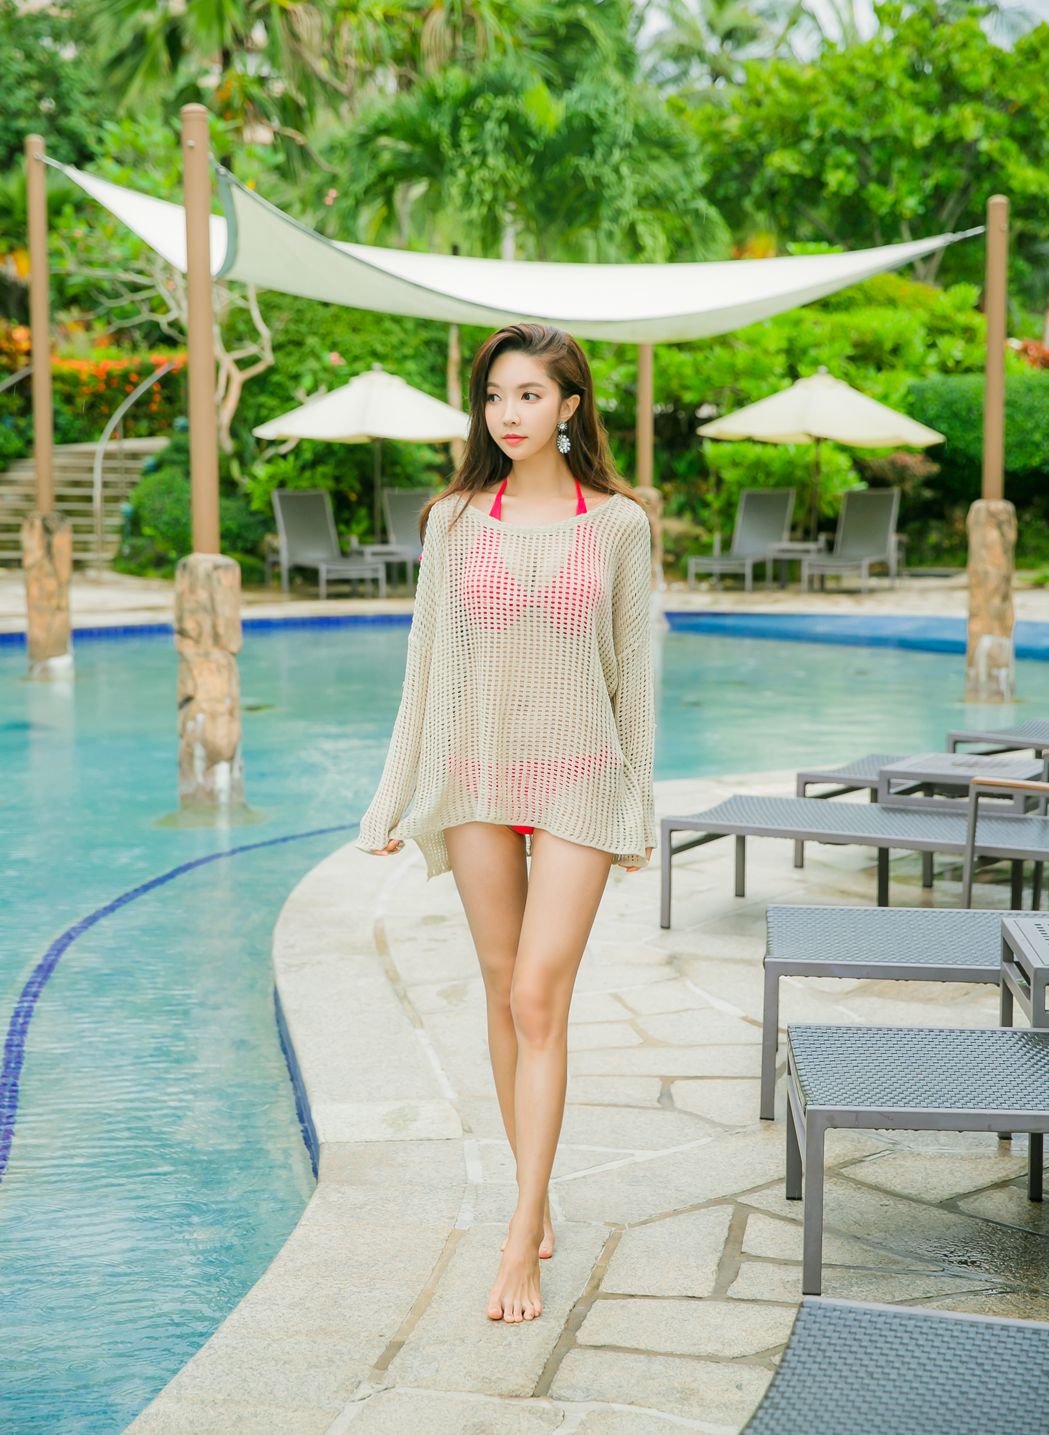 Park Soo Yeon 2017 Bikini Picture and Photo 6